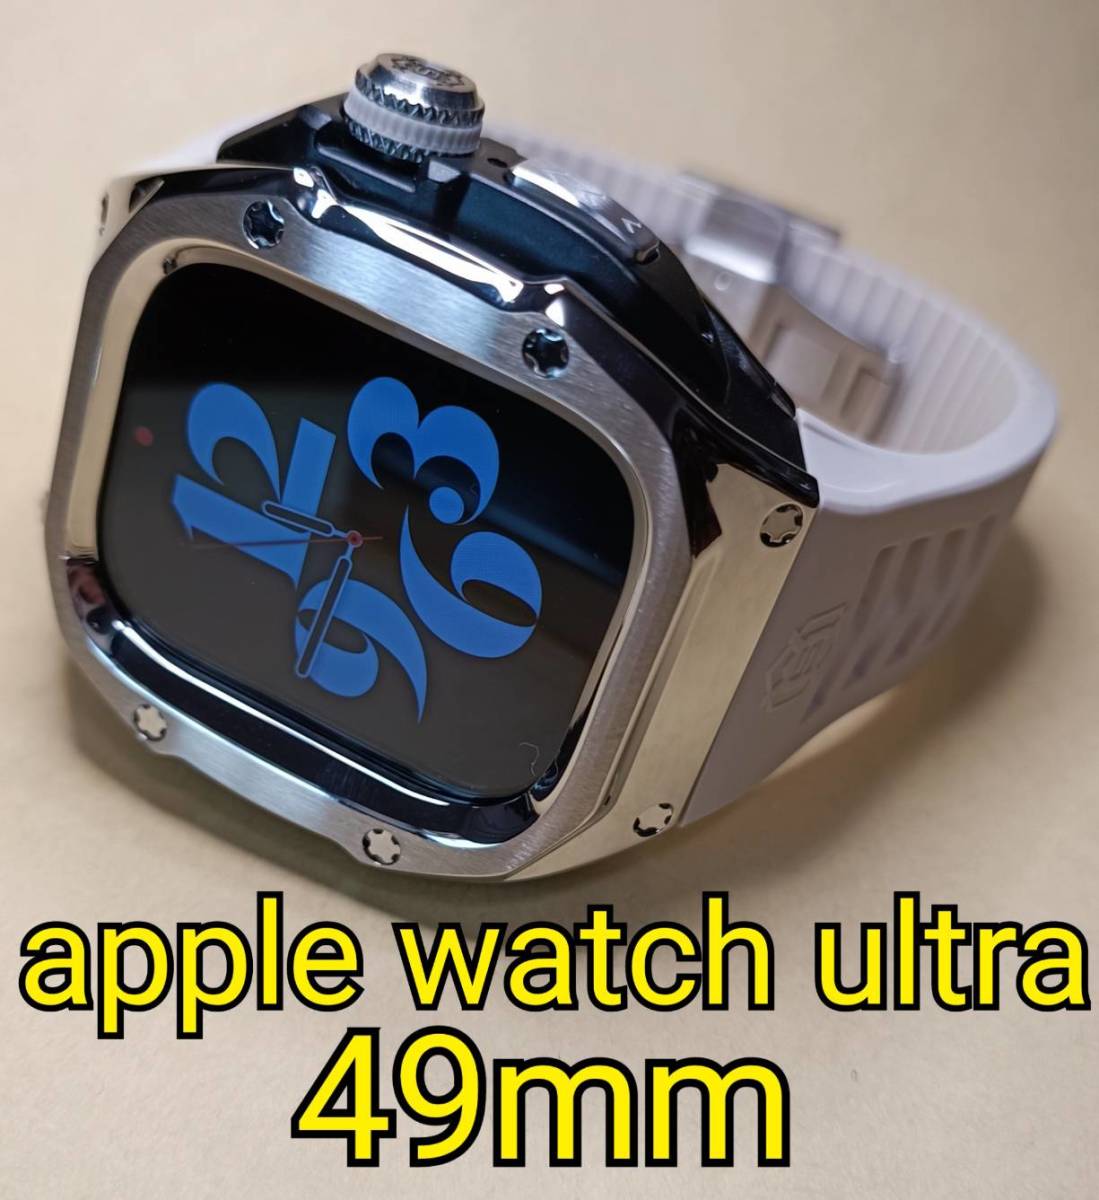 メタル銀白 49mm apple watch ultra アップルウォッチウルトラ メタル ケース ステンレス カスタム golden concept ゴールデンコンセプト_画像1